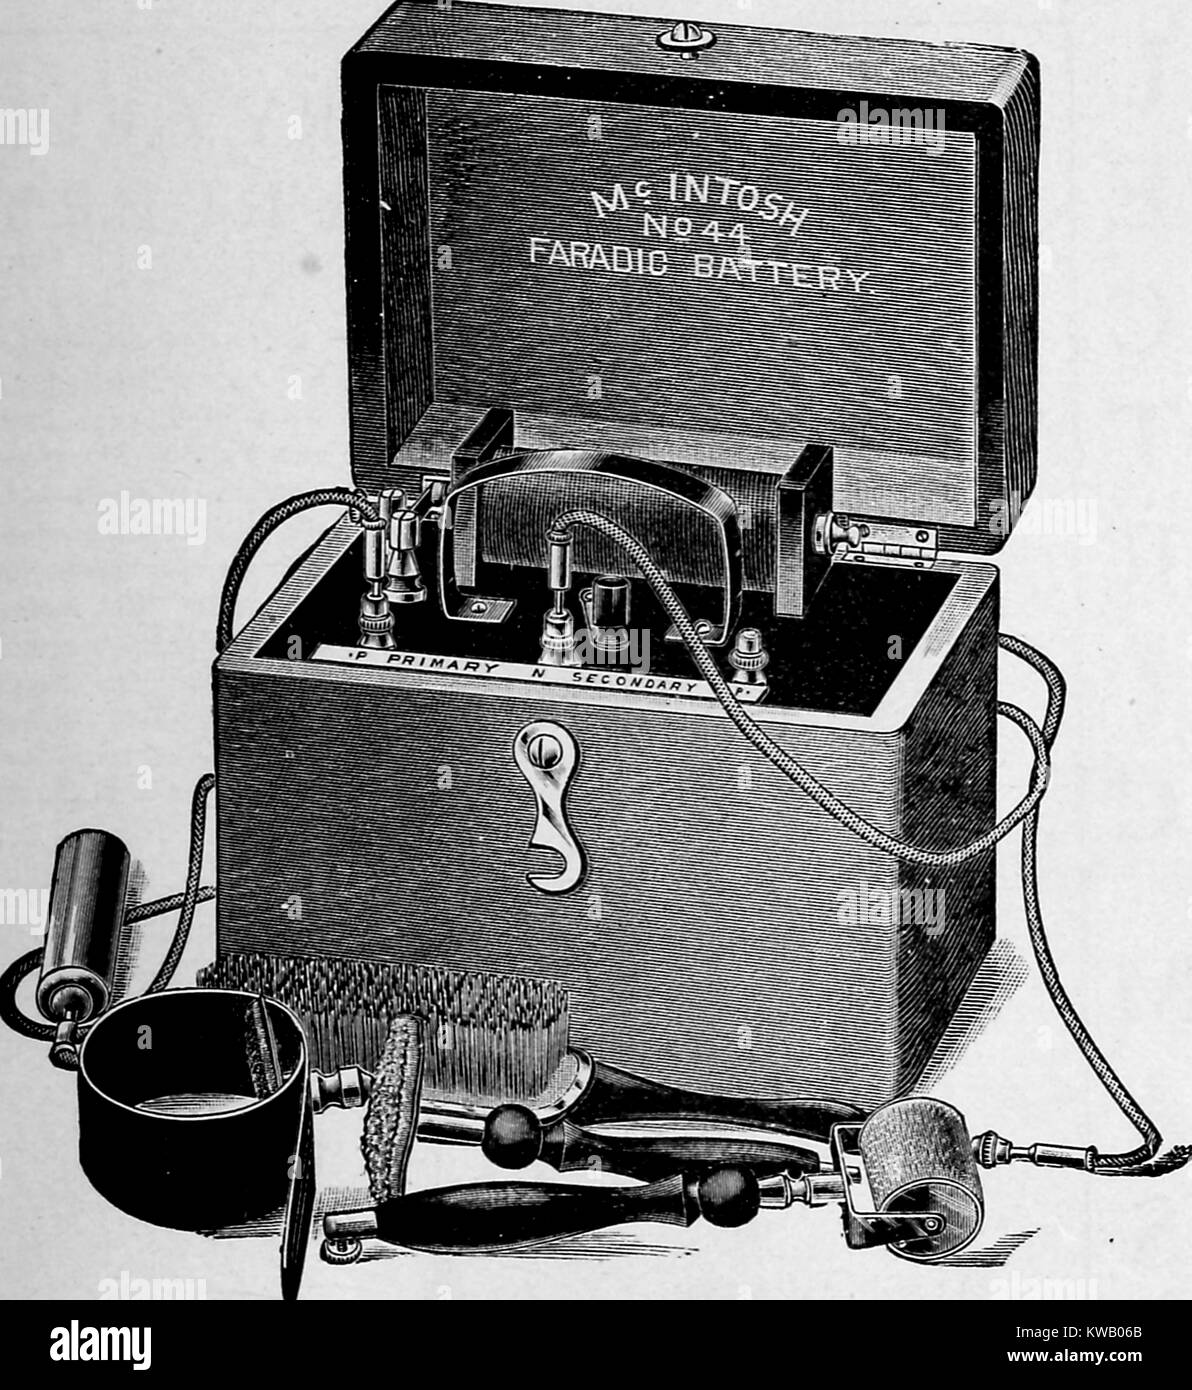 Illustrazione di un McIntosh Faradic batteria, un inizio di accumulatore di energia elettrica, con attrezzi utilizzati per l'utilizzo di elettricità in trattamenti di bellezza per la pelle, 1904. La cortesia Internet Archive. Foto Stock